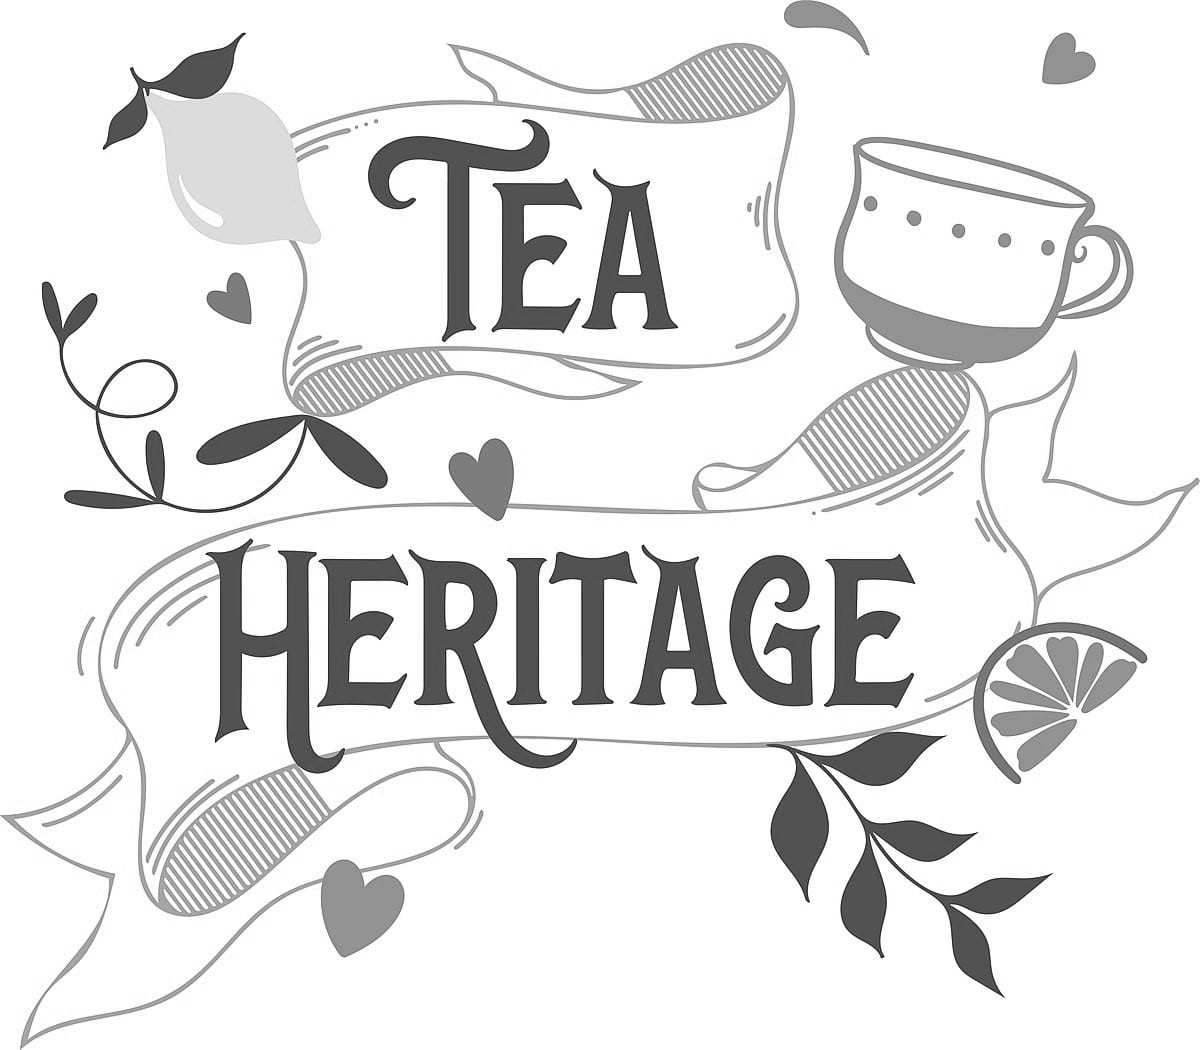 Tea Heritage